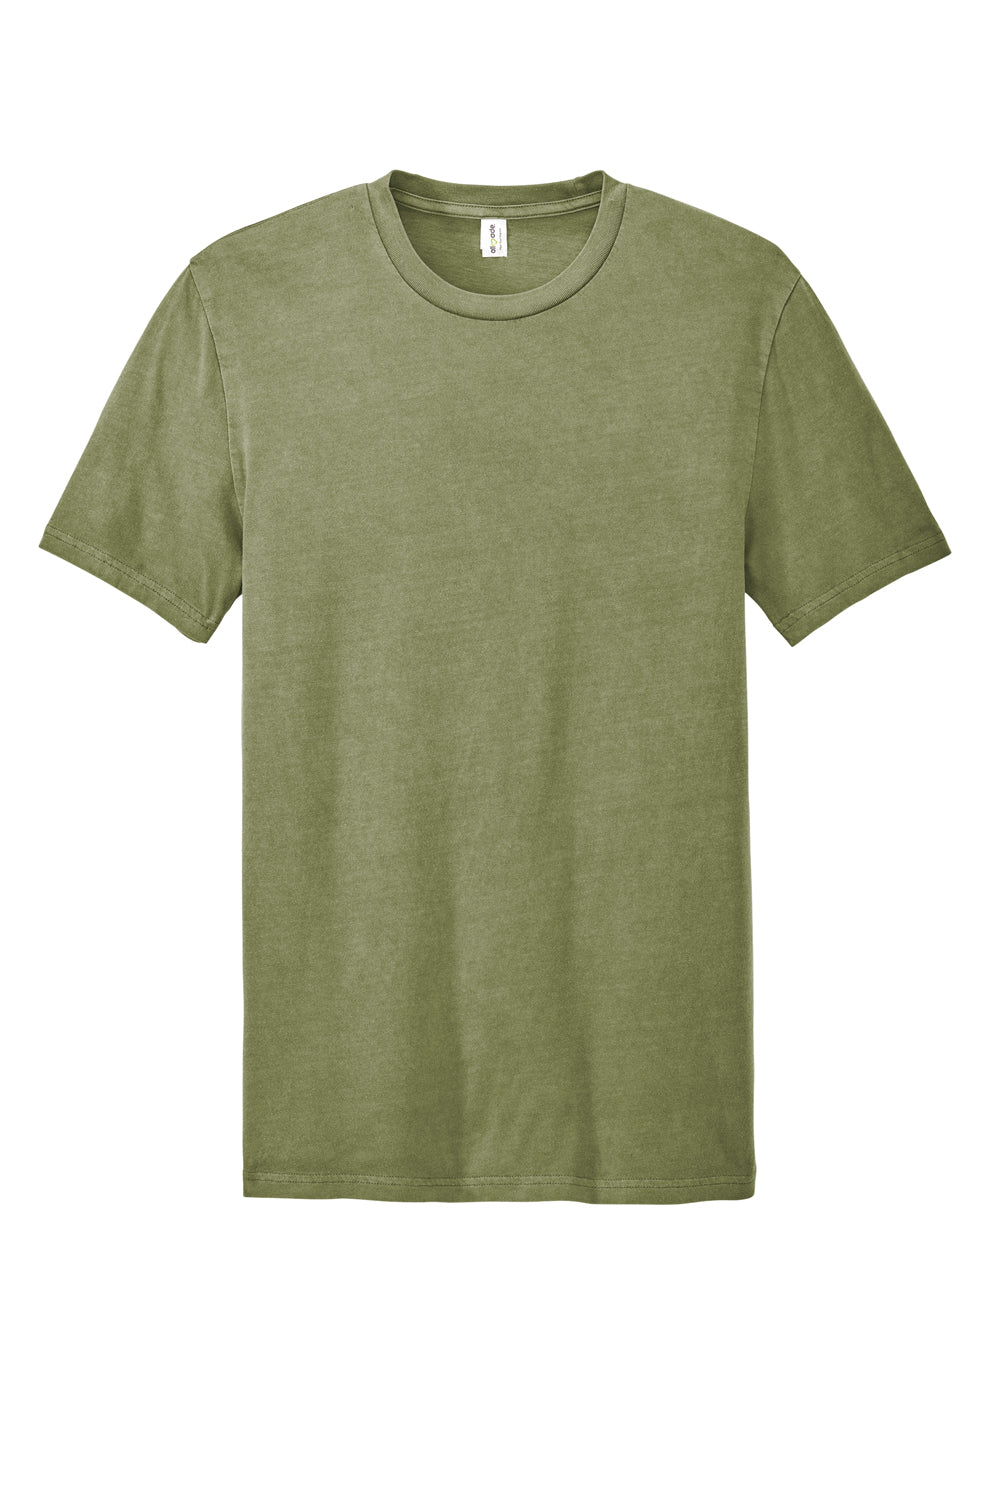 Allmade AL2400 Mens Mineral Dye Short Sleeve Crewneck T-Shirt Lichen Green Flat Front